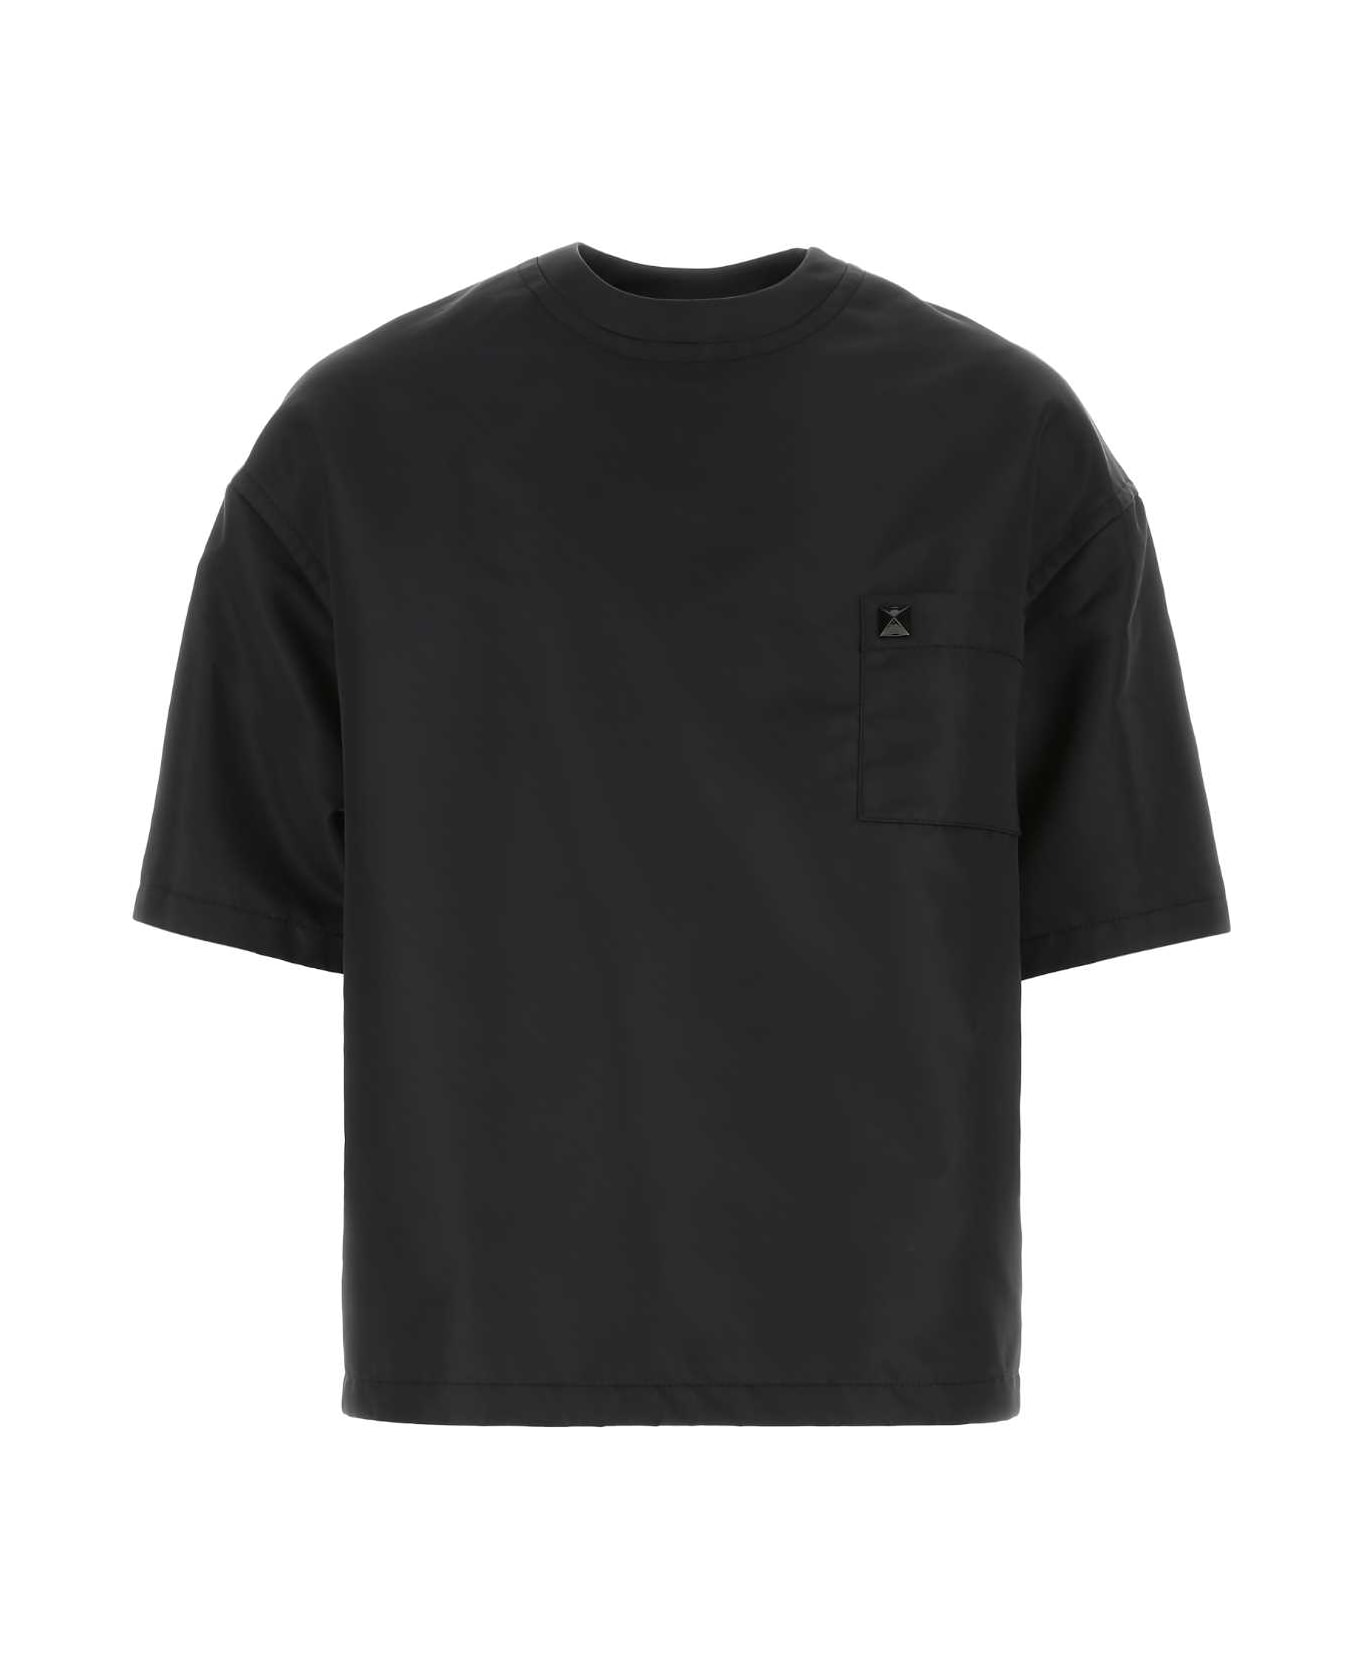 Valentino Garavani Black Nylon Oversize Shirt - 0NO シャツ